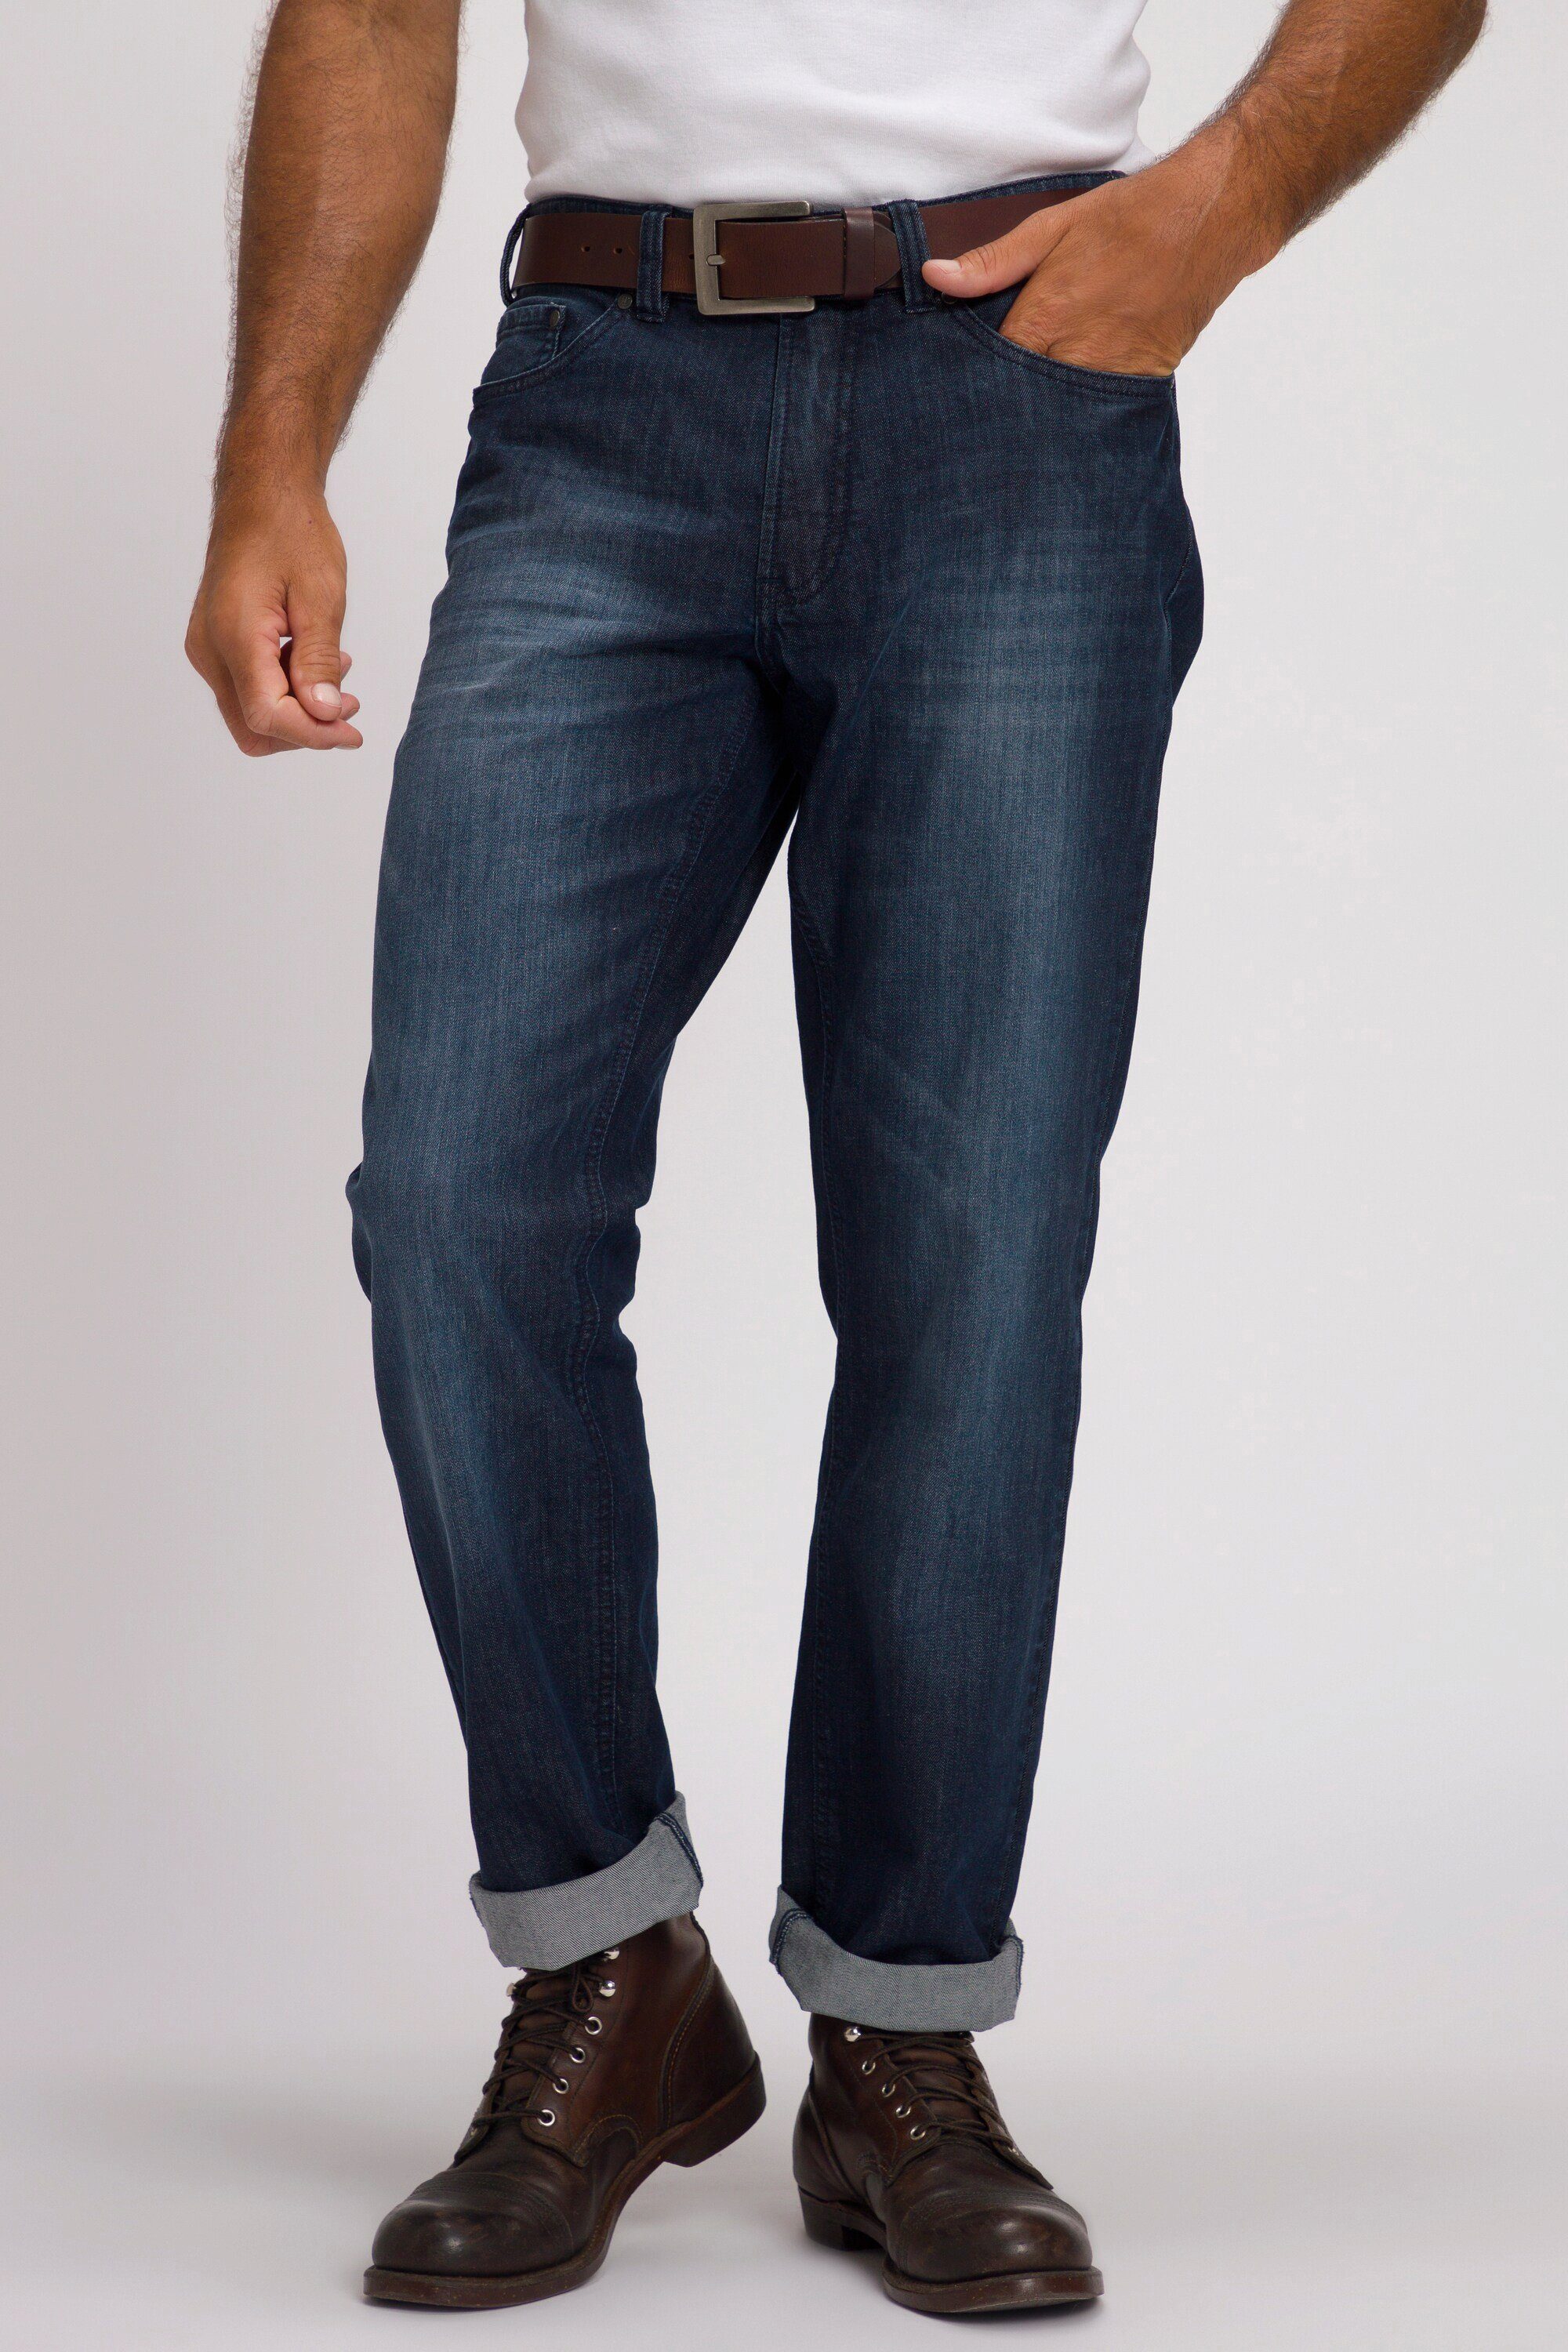 JP1880 Cargohose Fit denim Regular Denim Jeans blue dark 5-Pocket Denim